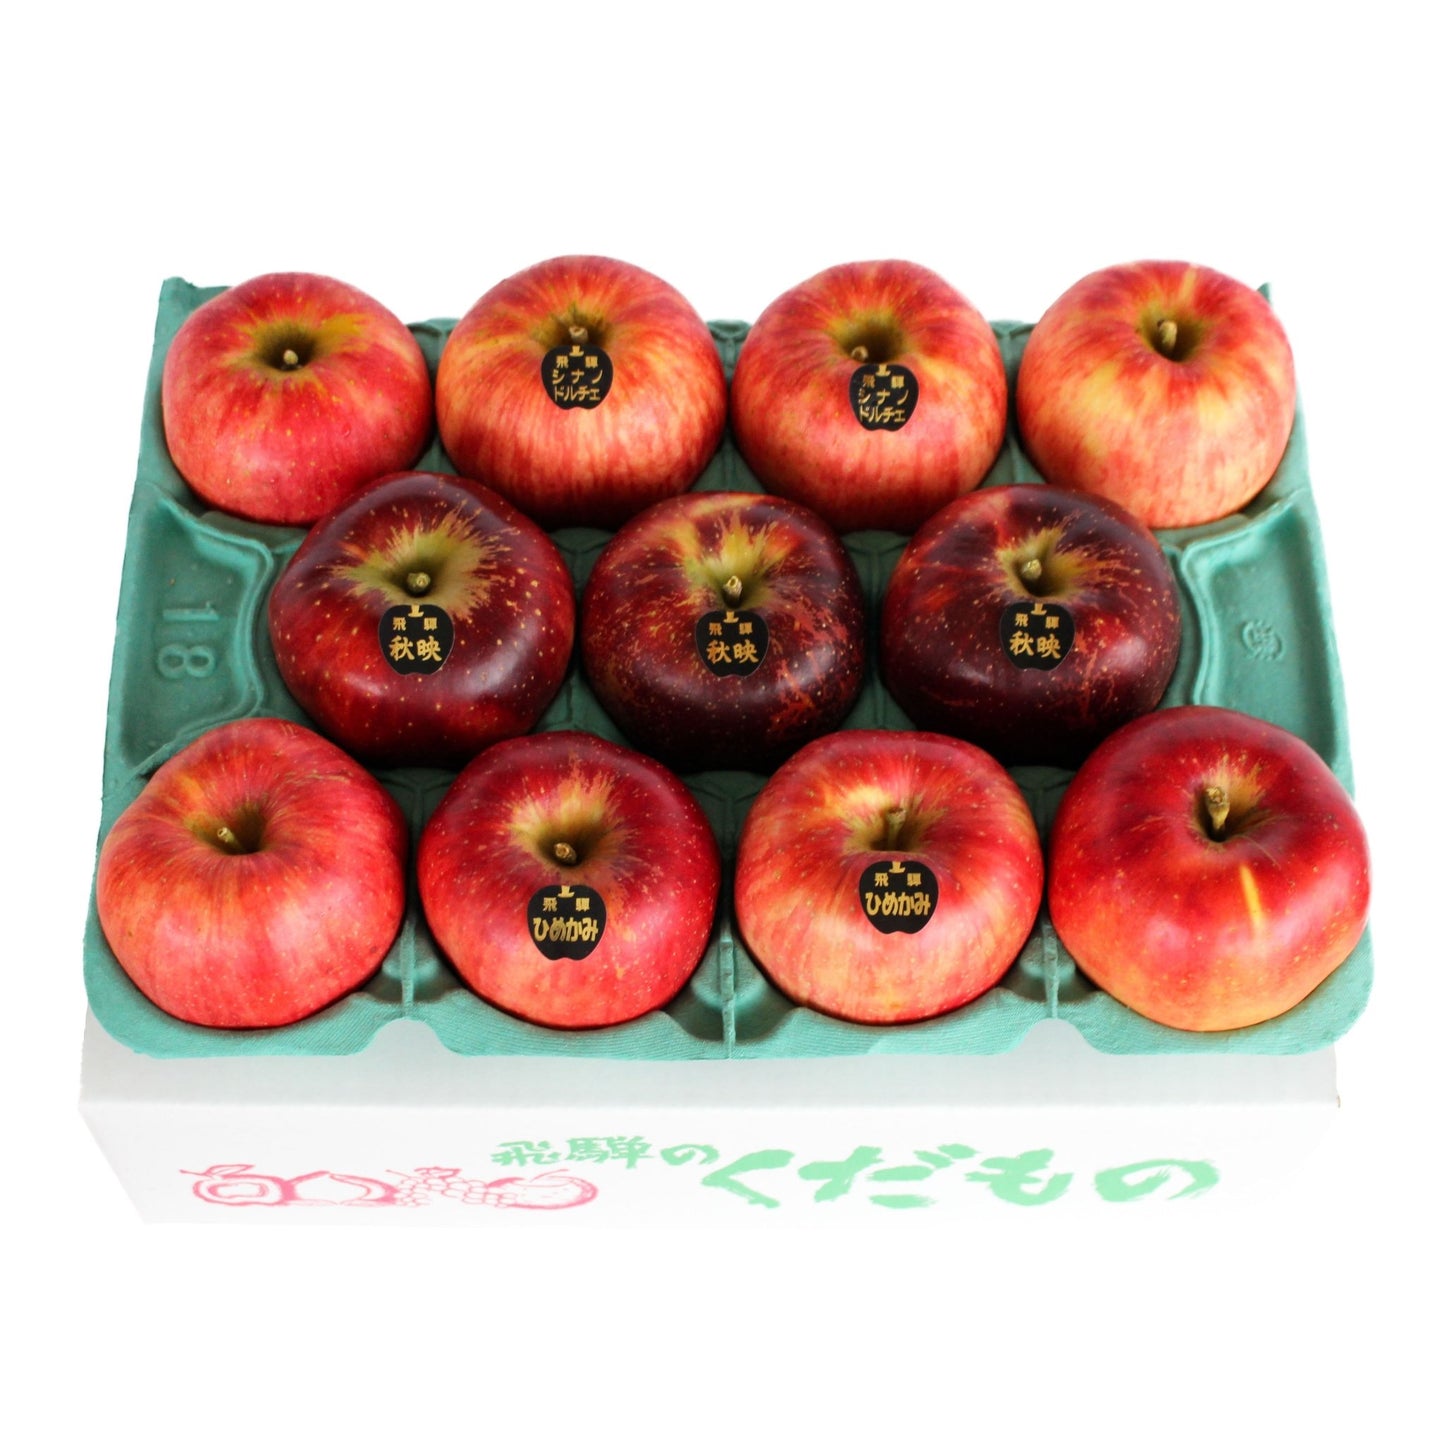 飛騨りんご 2~3品種詰め合わせ - 木戸脇果樹園